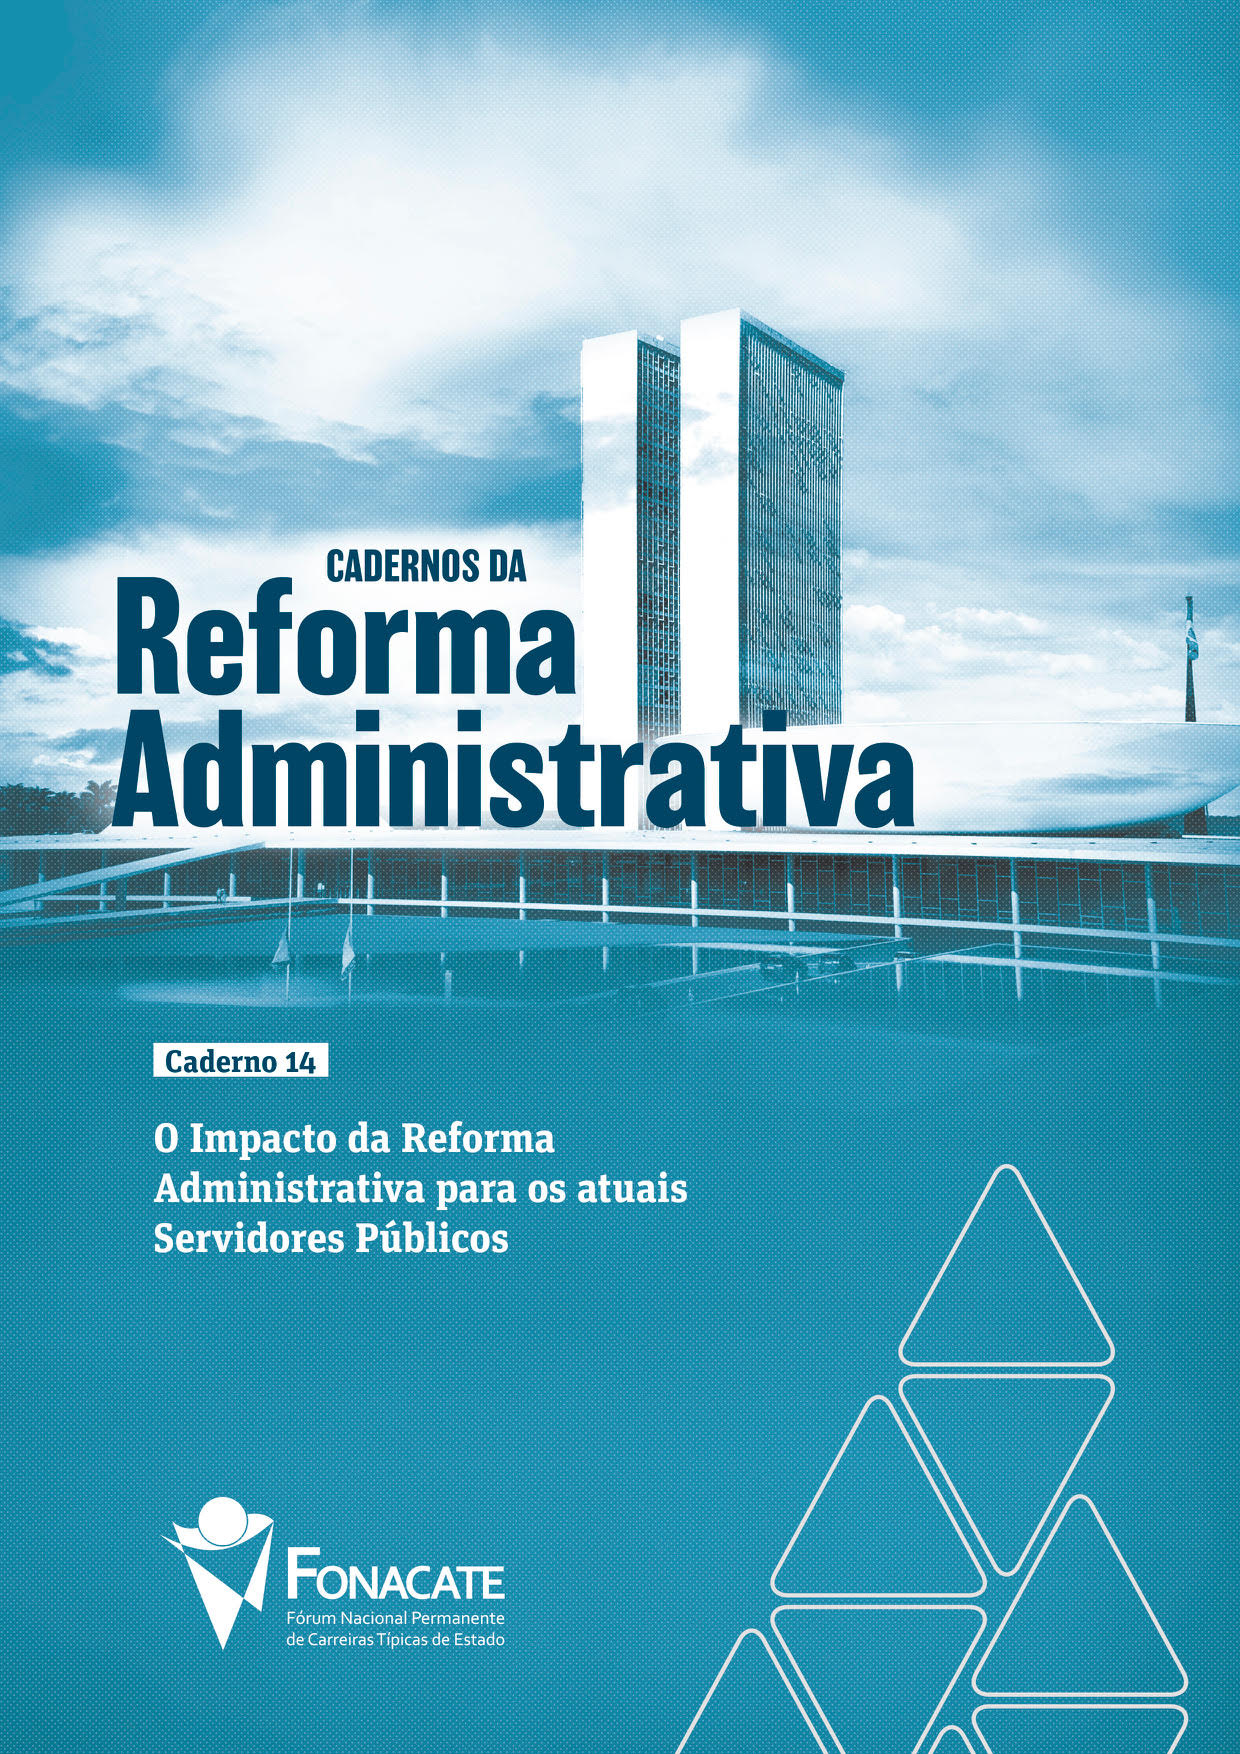 Caderno 14 – O Impacto da Reforma Administrativa para os atuais Servidores Públicos